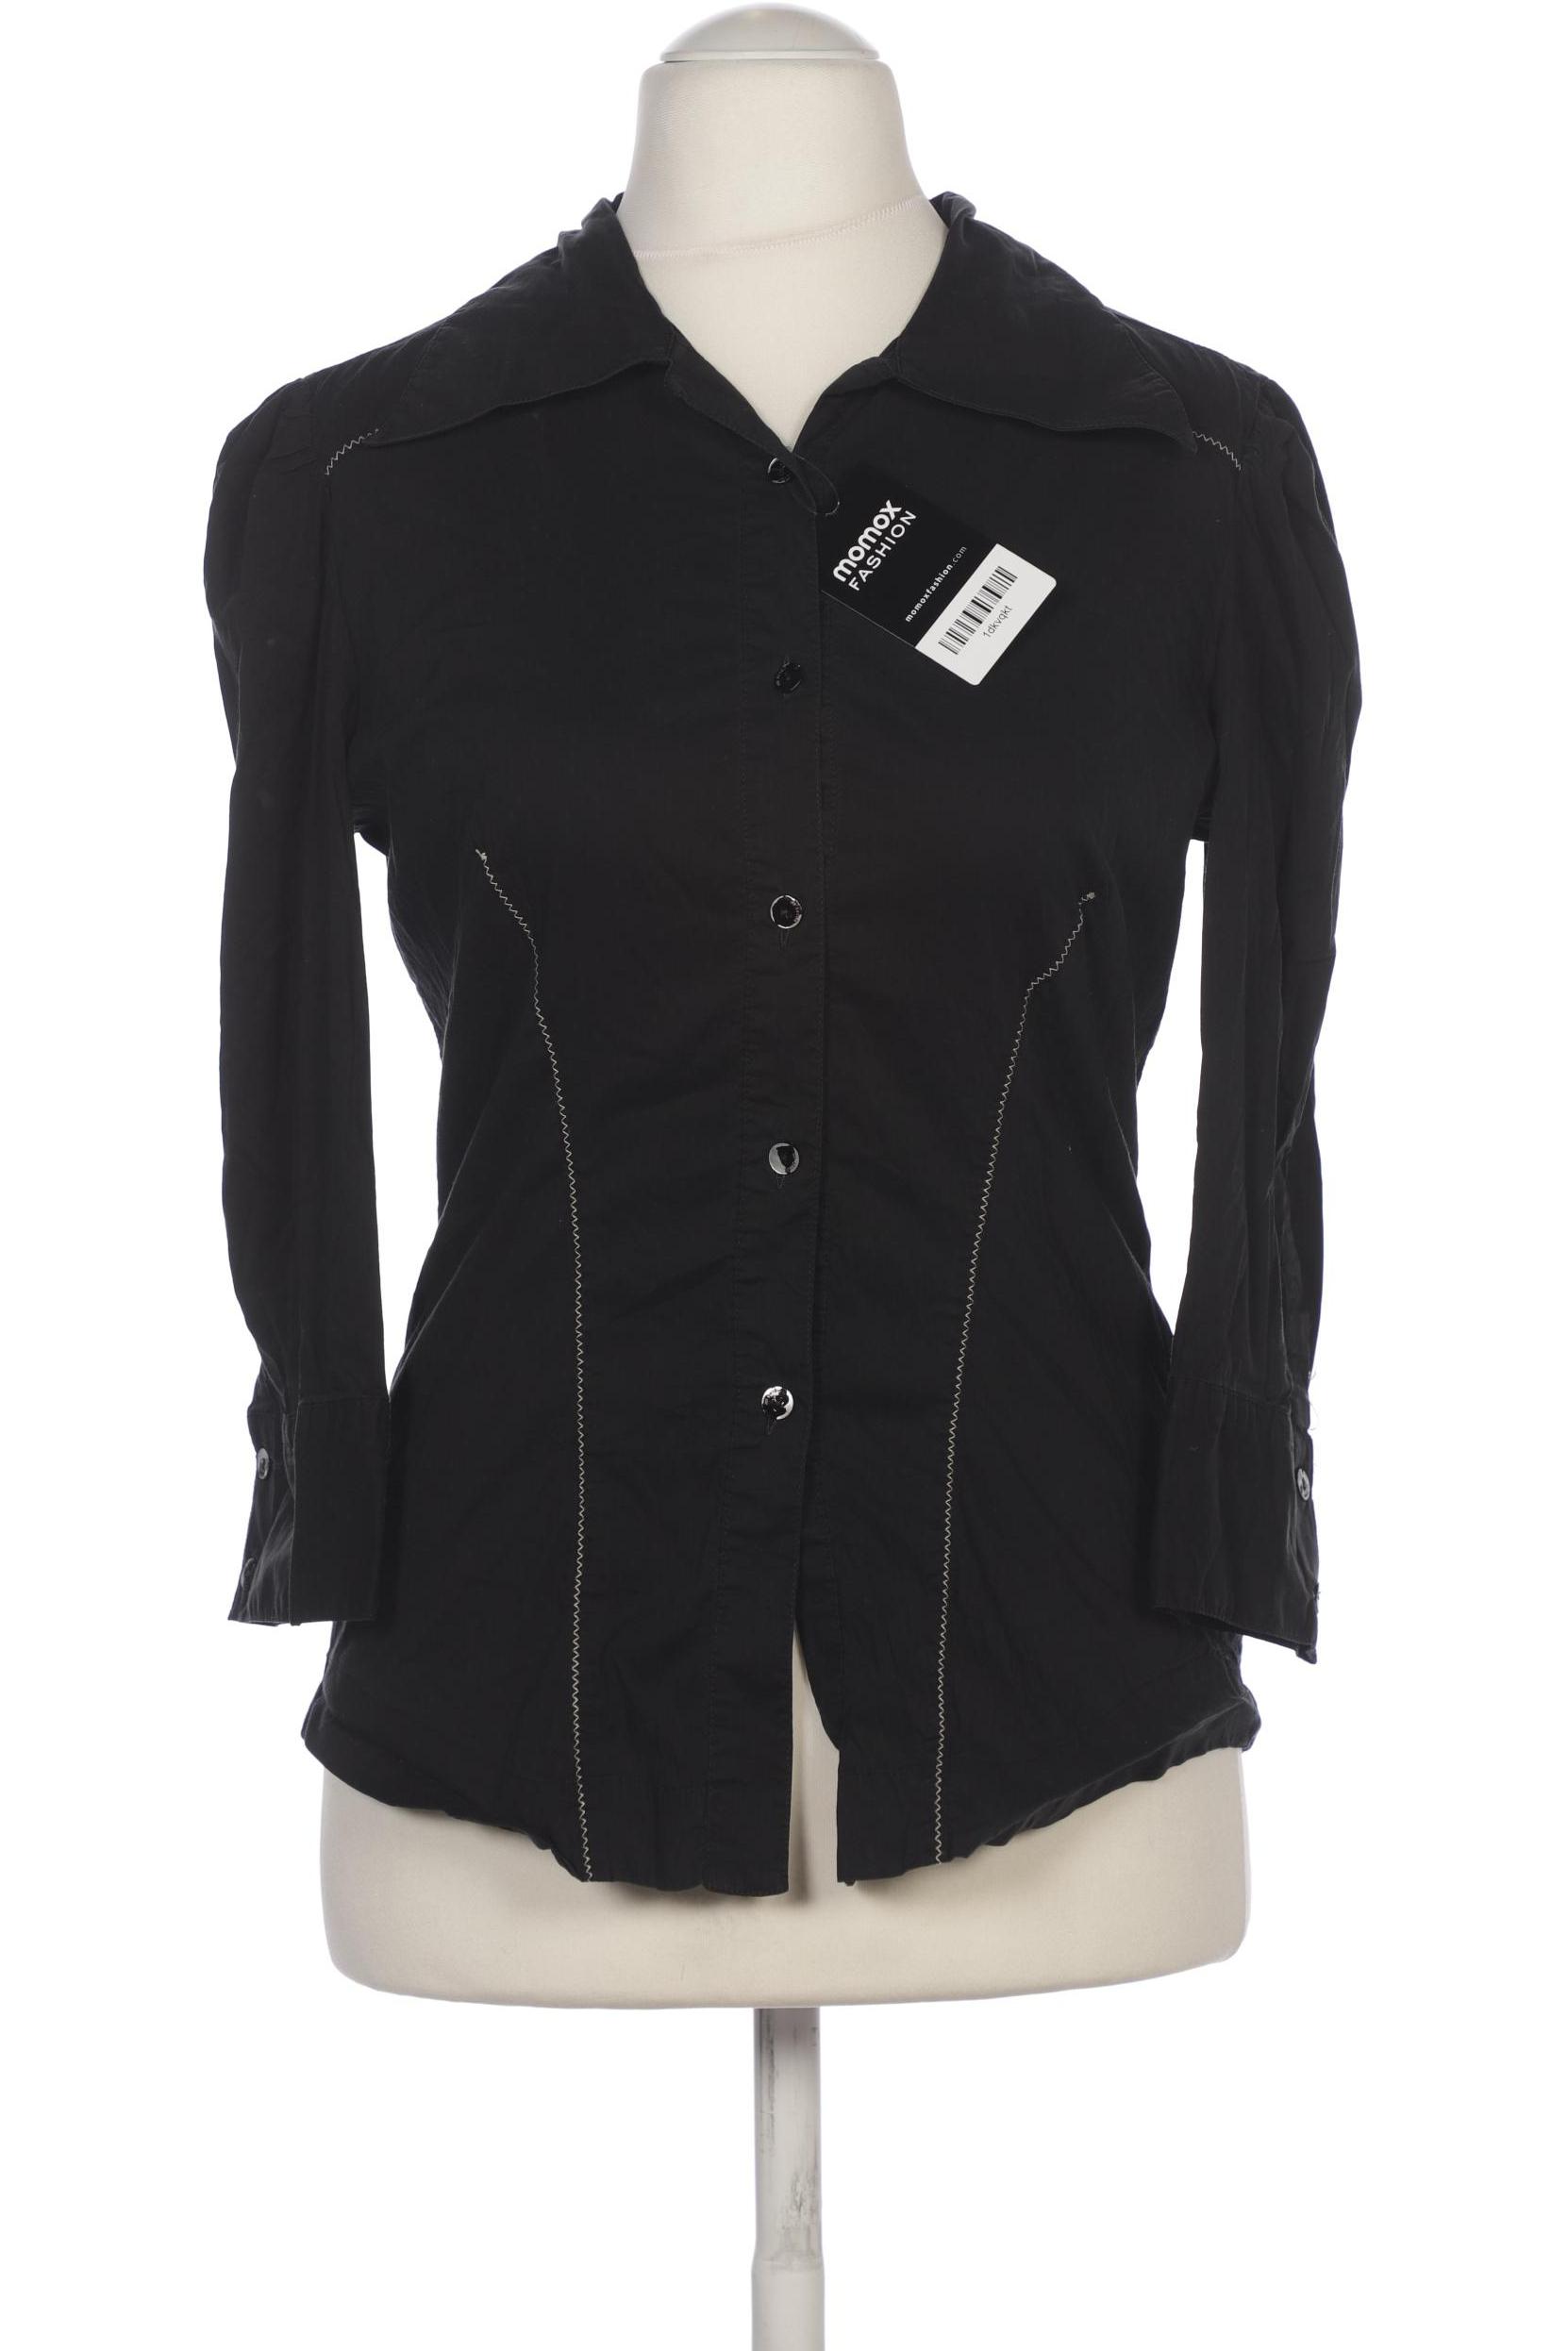 Just Cavalli Damen Bluse, schwarz, Gr. 36 von Just Cavalli